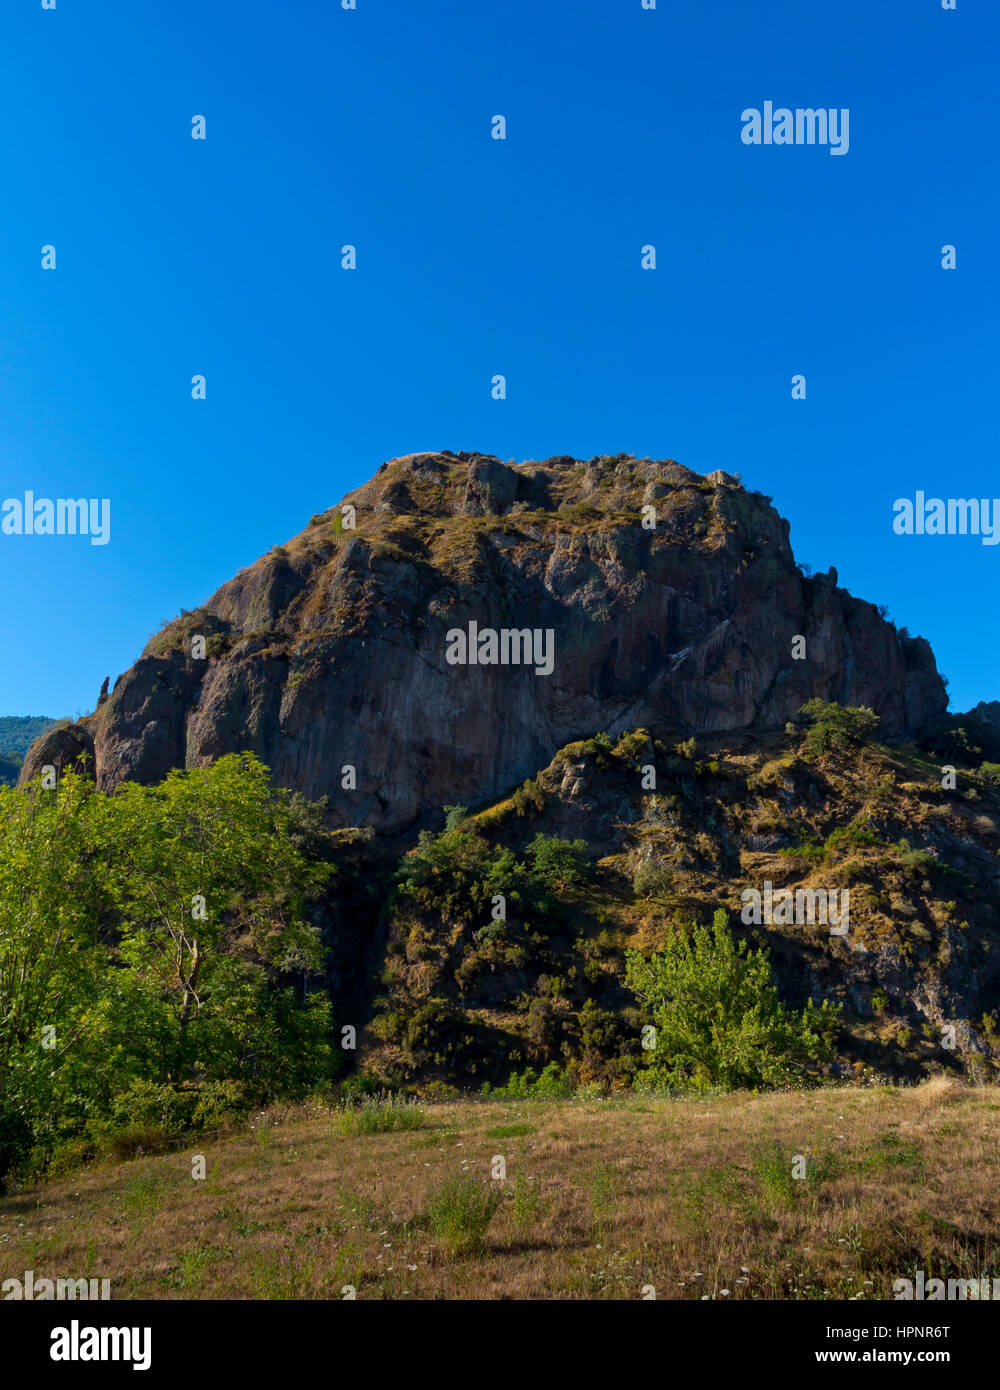 Rocky outcrop at Penallana in the Vega de Liebana, Picos de Europa National Park, Cantabria, northern Spain Stock Photo